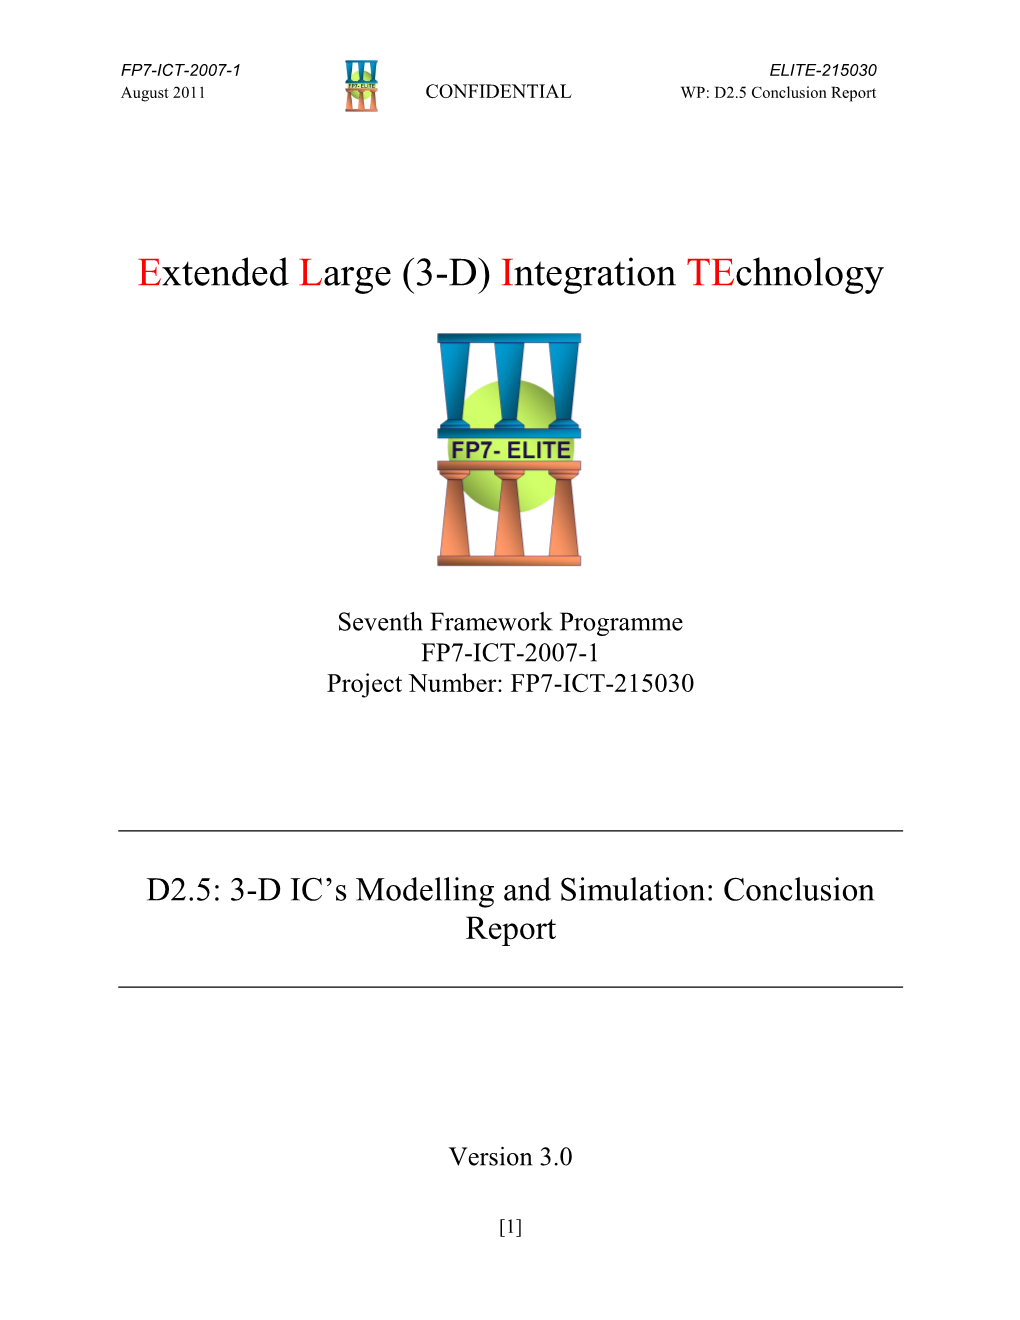 (3-D) Integration Technology